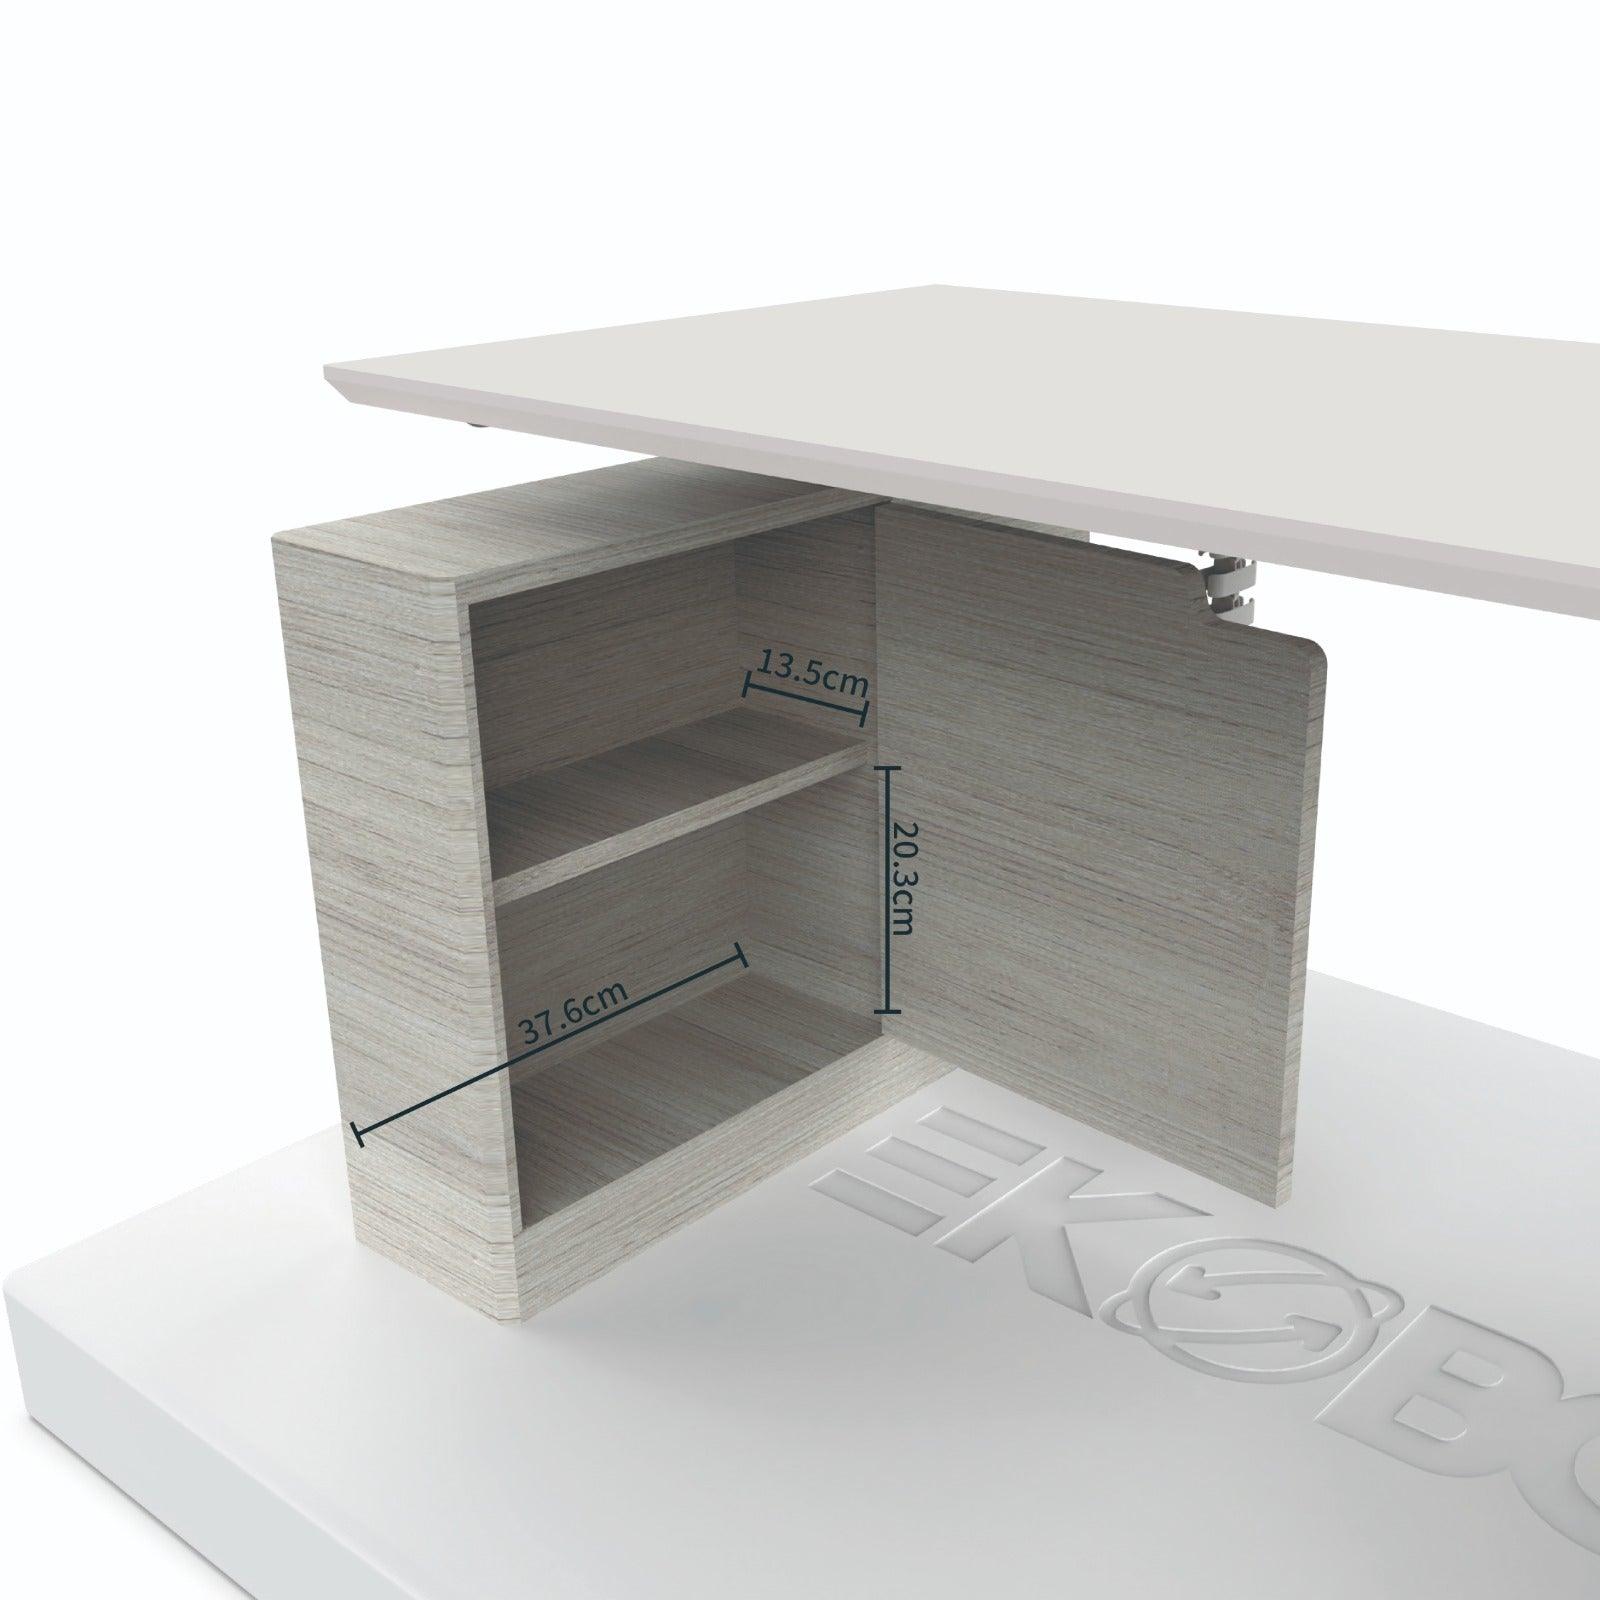 Ekobor I-WRAP EKOBOR designed customized Executive/ Home Use Premium Model Standing Desk.